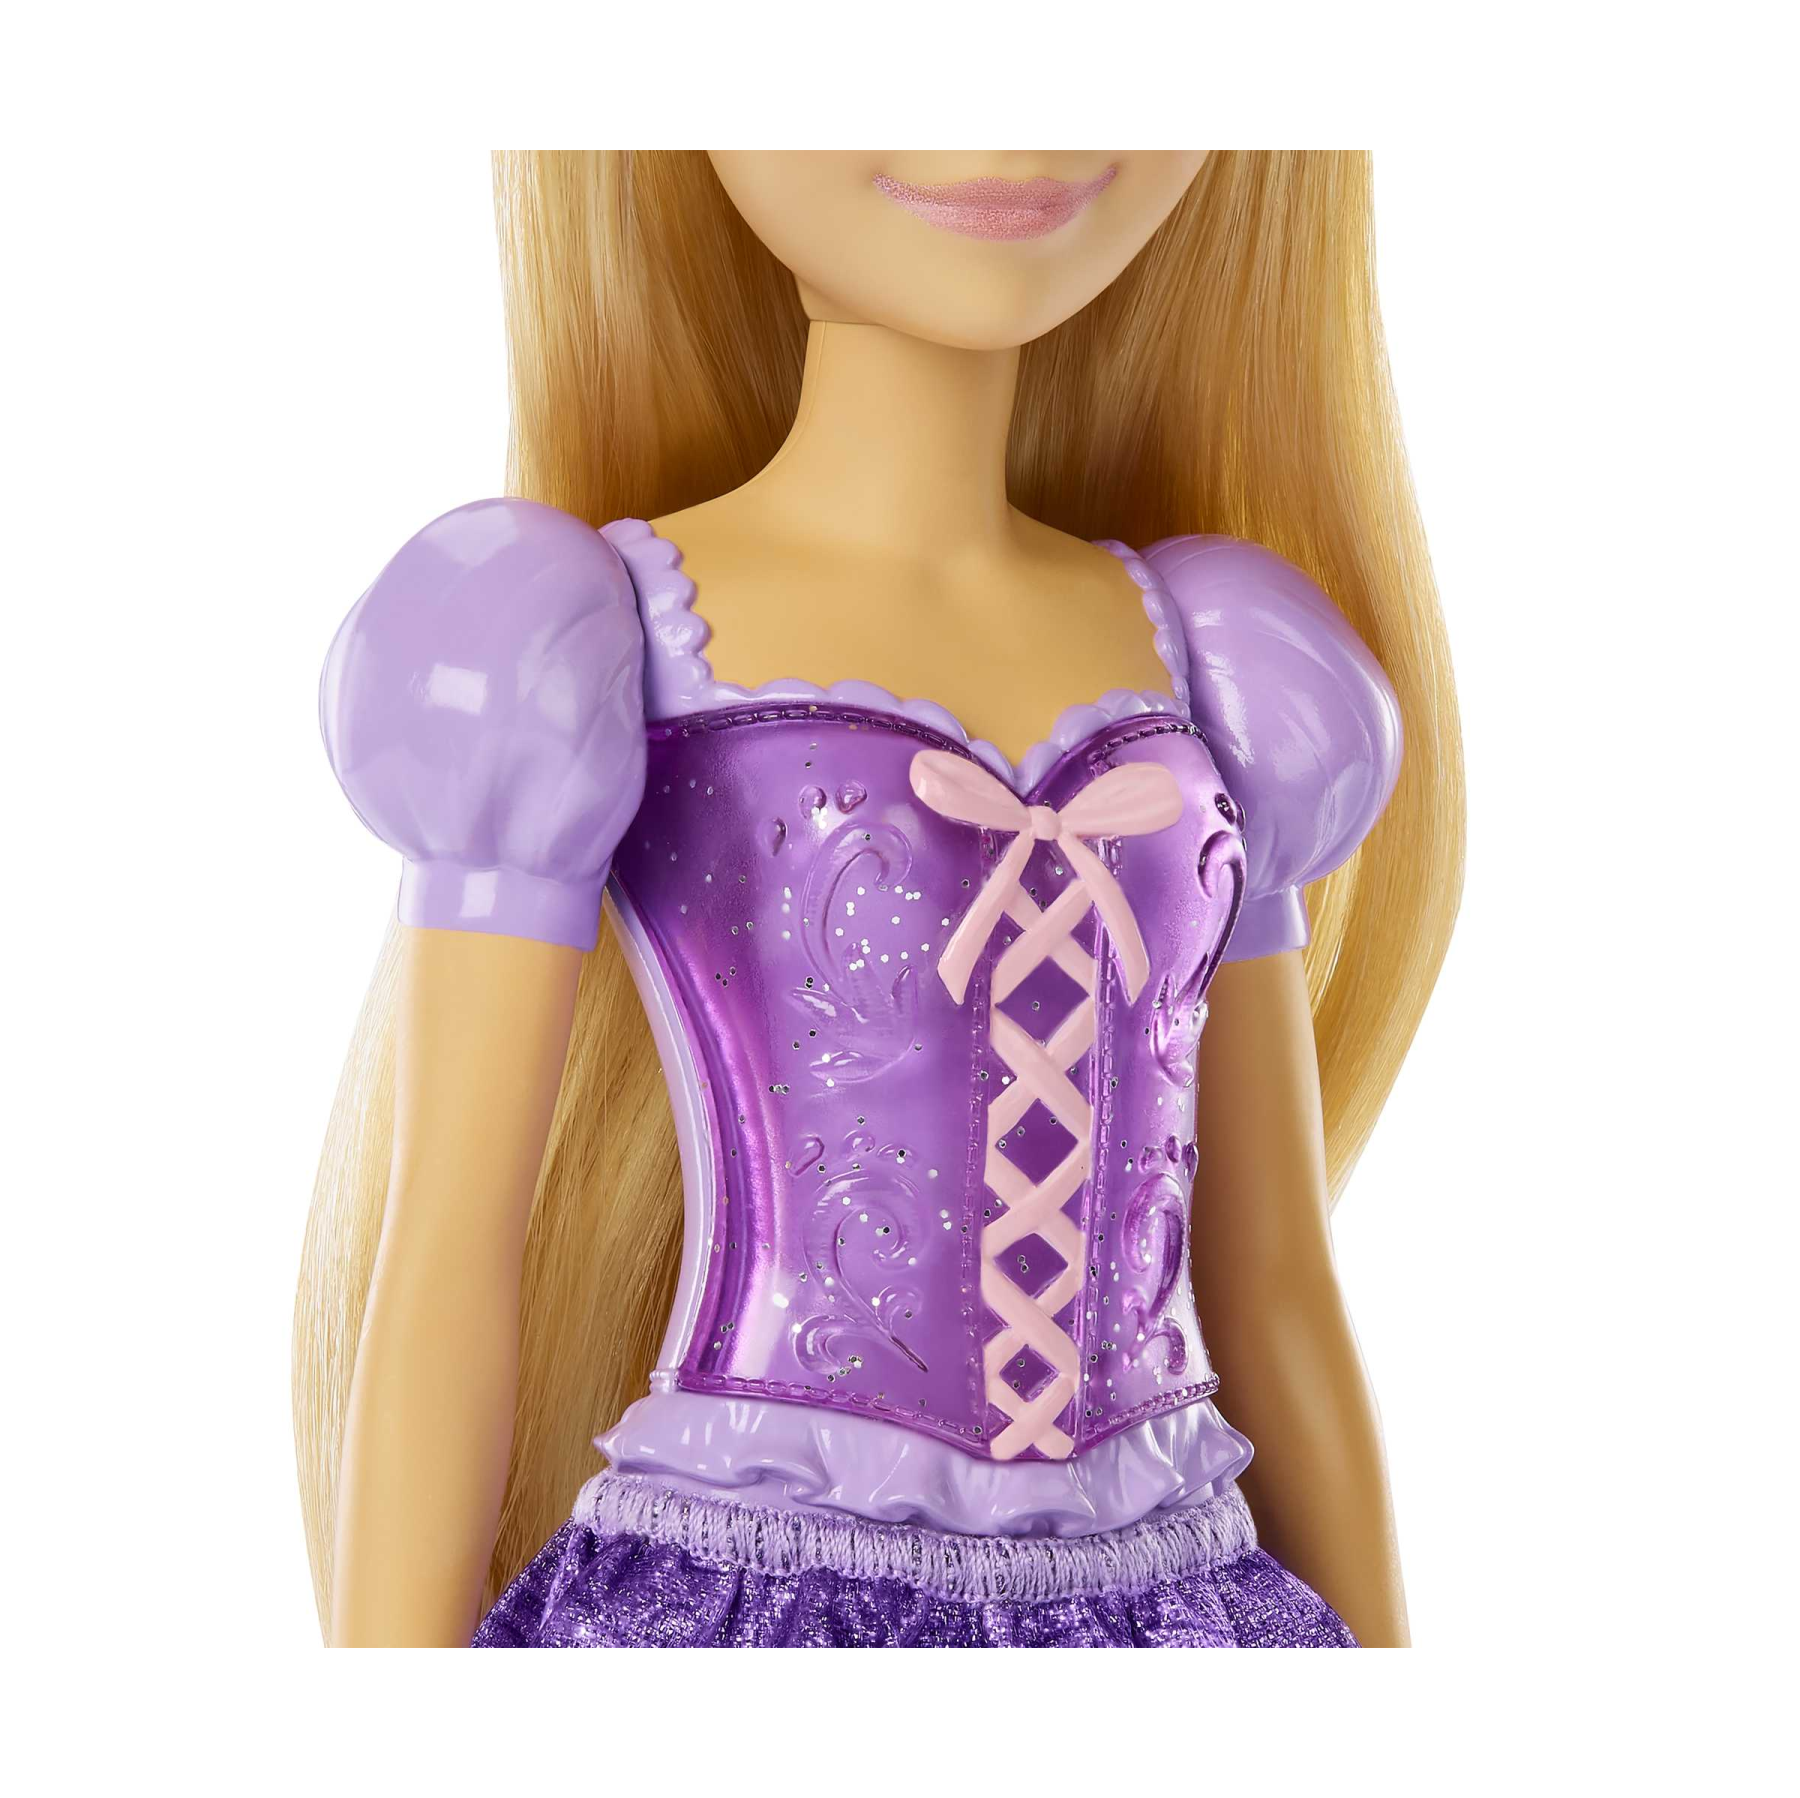 Disney princess - rapunzel bambola snodata, vestita alla moda con capi e accessori scintillanti ispirati al film disney, giocattolo per bambini, 3+ anni, hlw03 - DISNEY PRINCESS